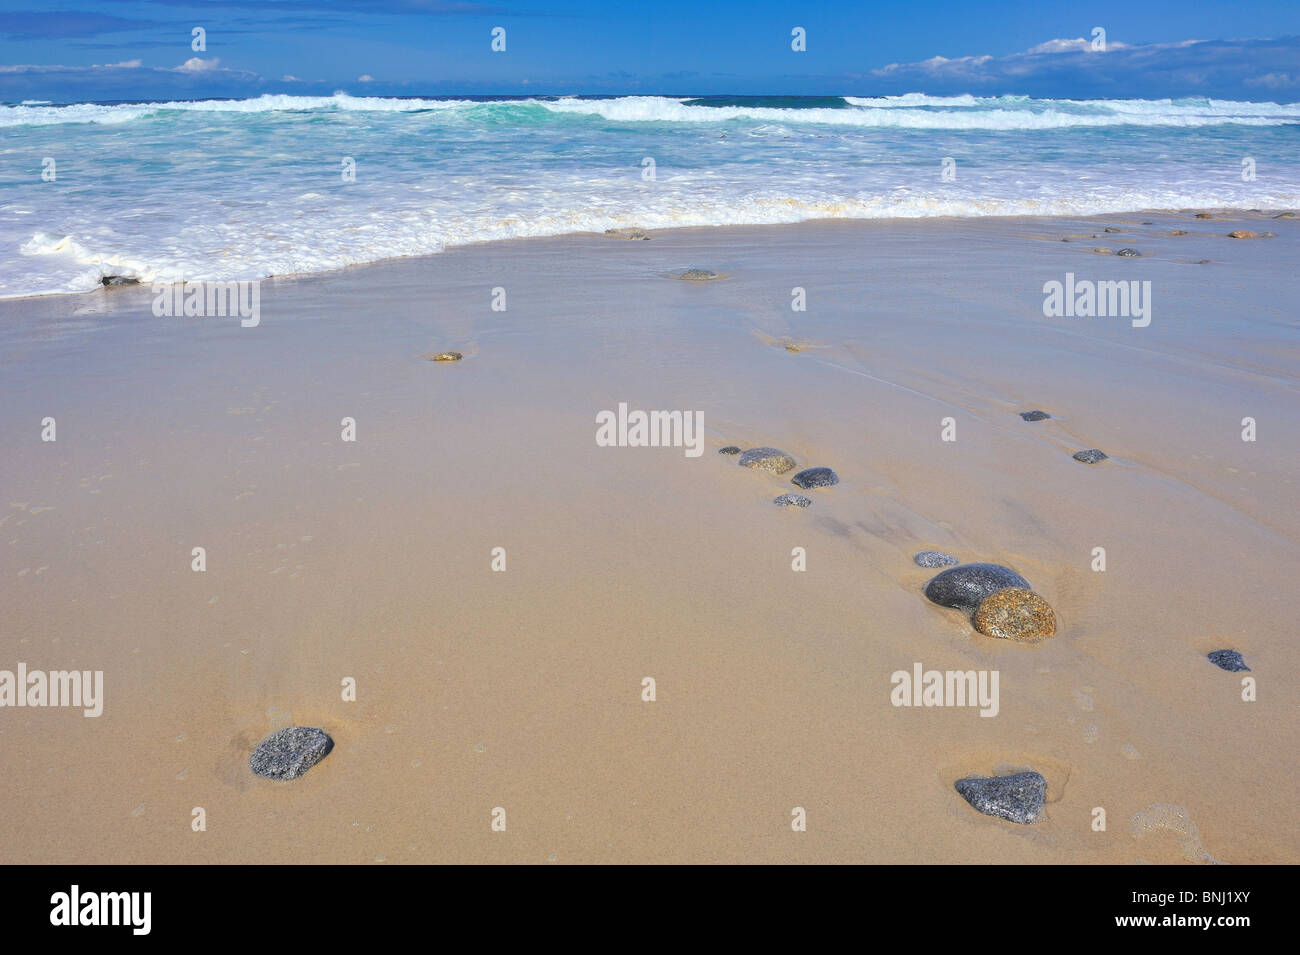 Romantischen Strand türkis blauen Wellen Ebbe Fluss am Sandstrand mit Steinen Felsen Horizont über Wasser und Spiegelungen im sand Stockfoto